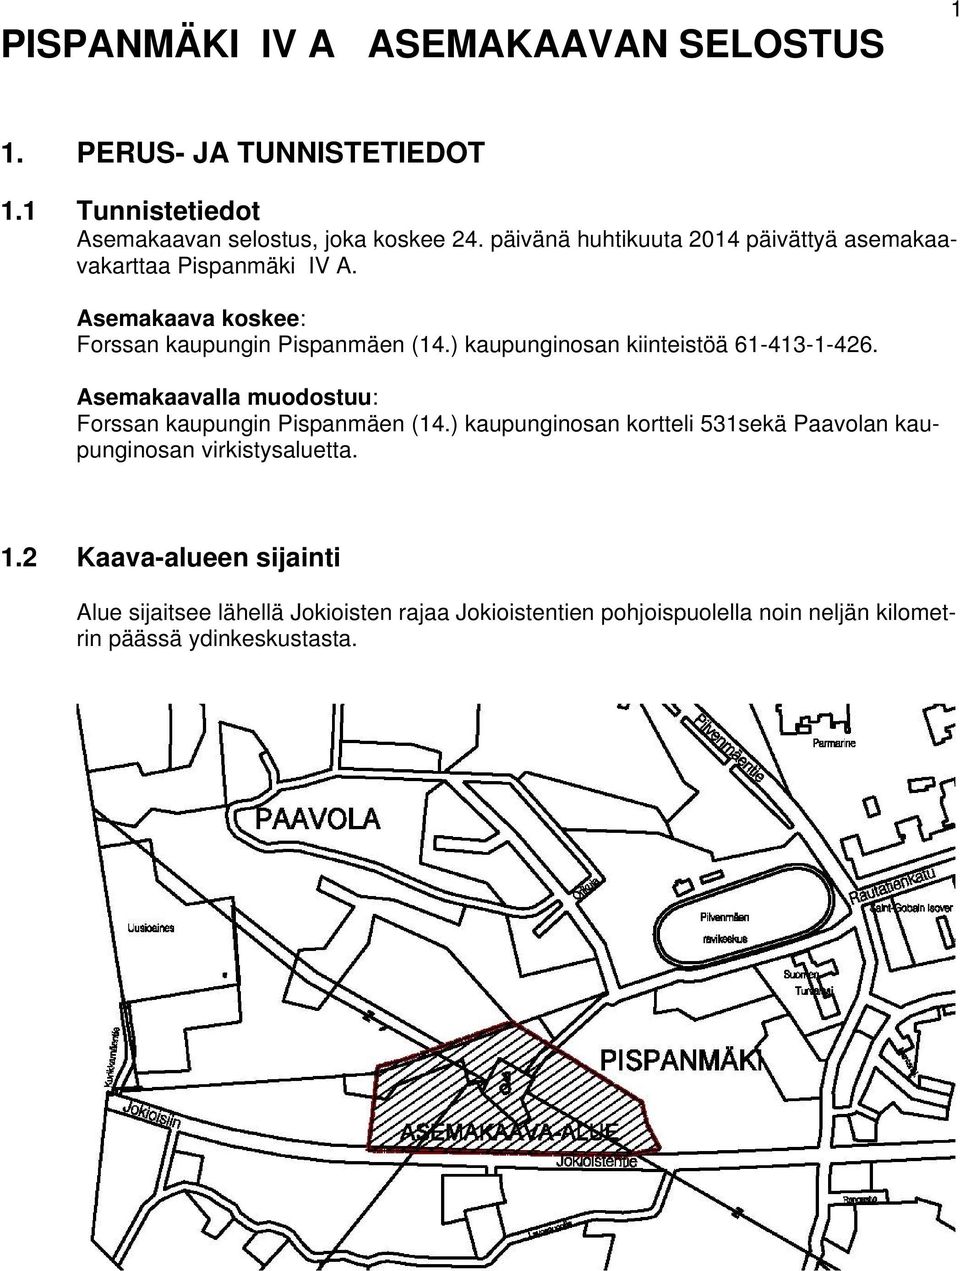 ) kaupunginosan kiinteistöä 61-413-1-426. Asemakaavalla muodostuu: Forssan kaupungin Pispanmäen (14.